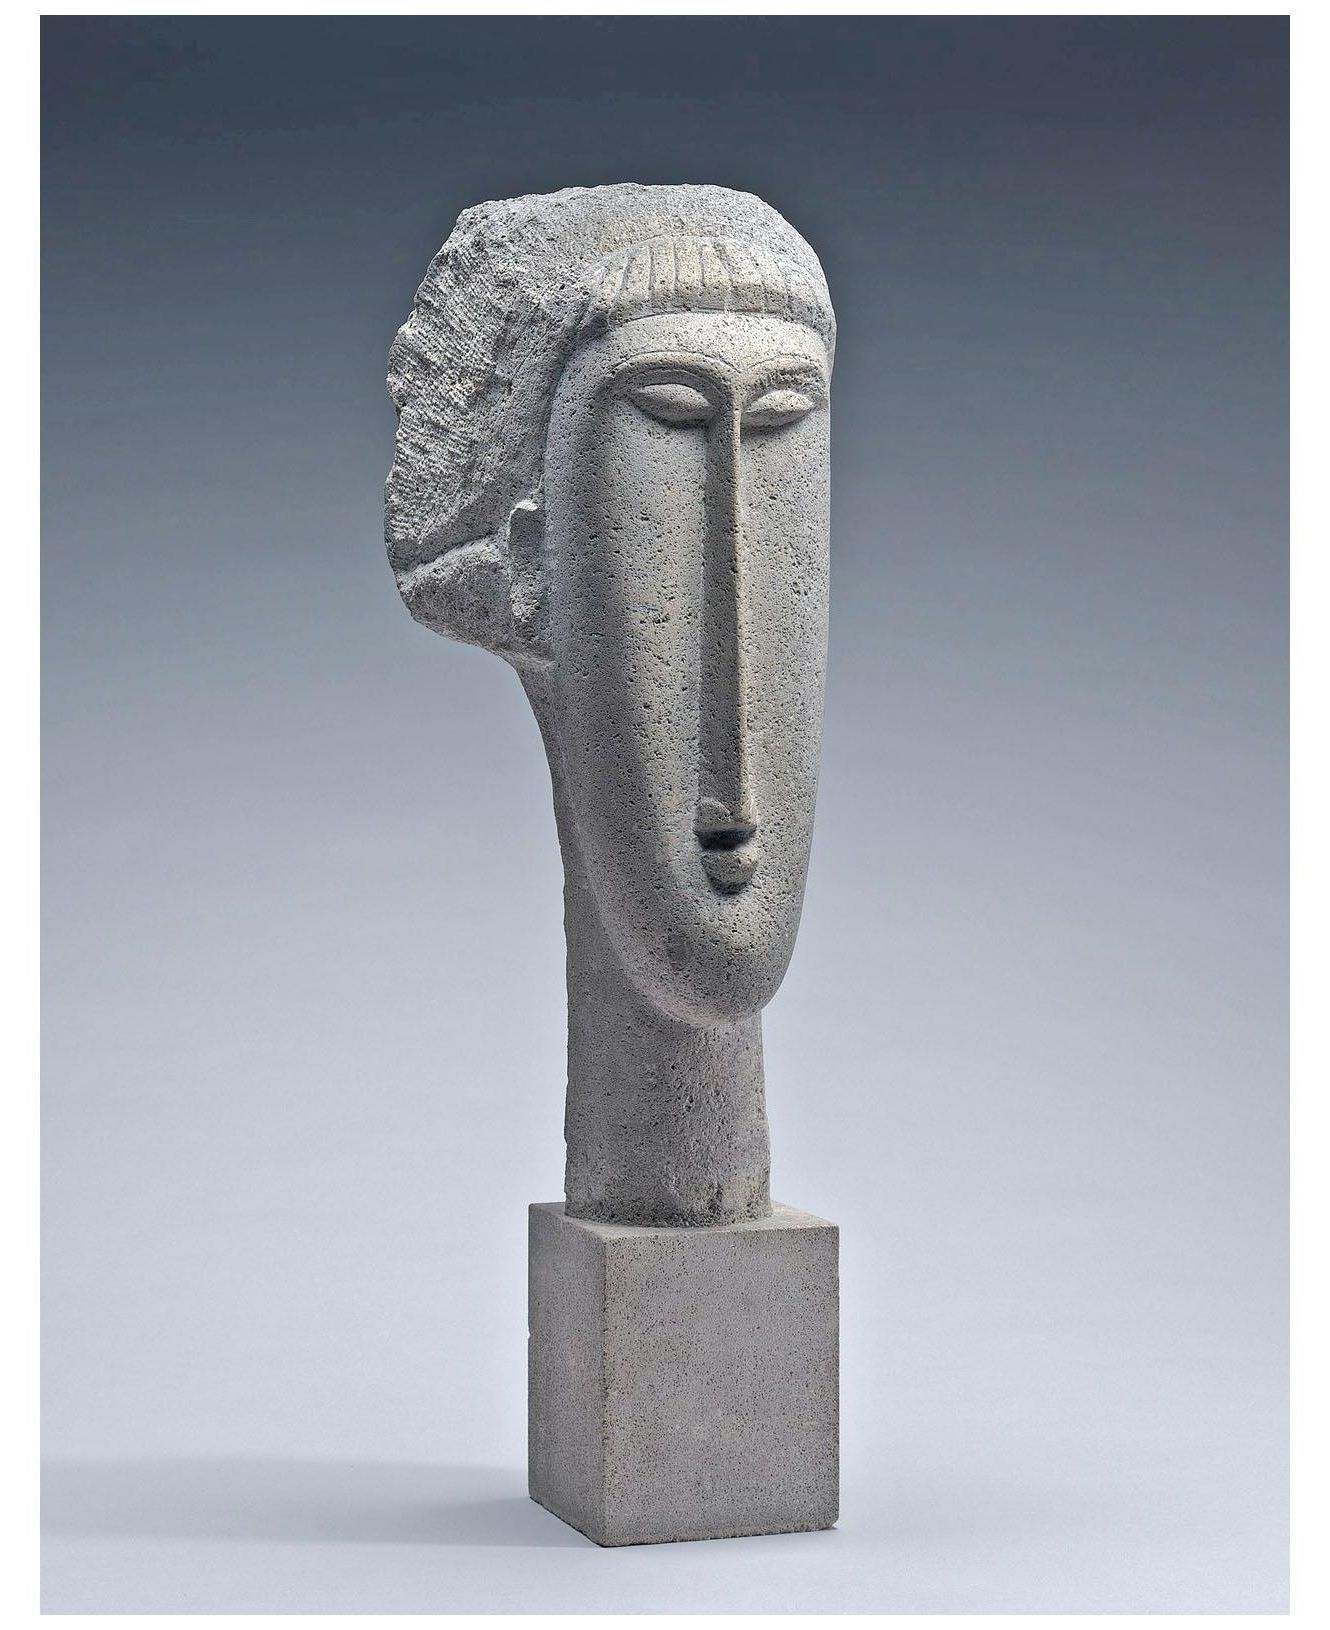 Amedeo Modigliani. Tête de Femme. 1910. NGA Washington